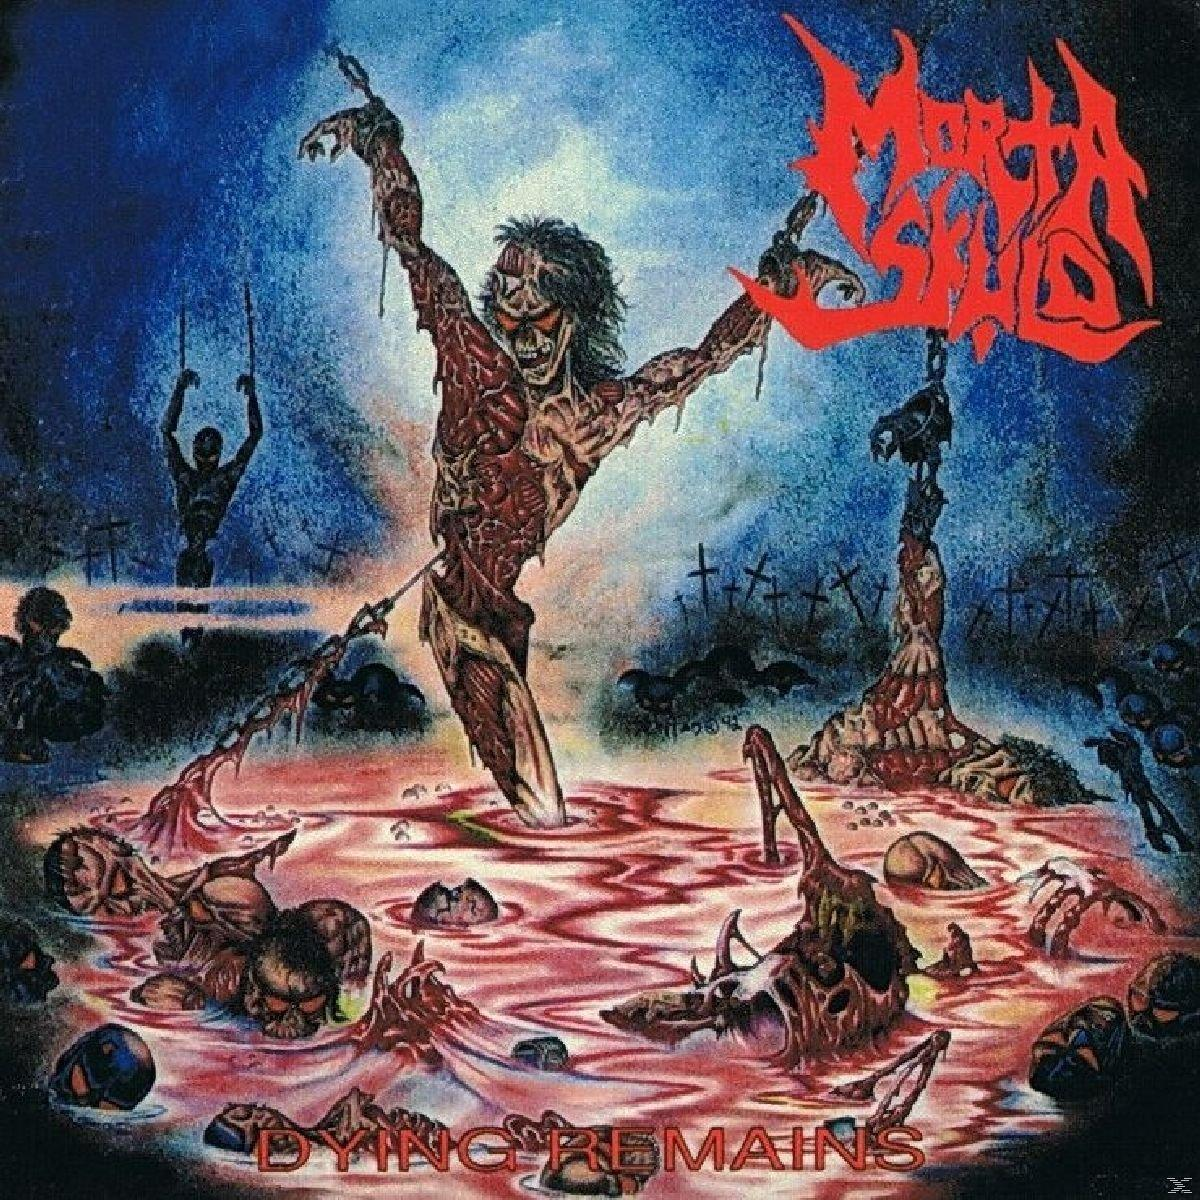 (Vinyl) Morta - Dying Skuld - Remains